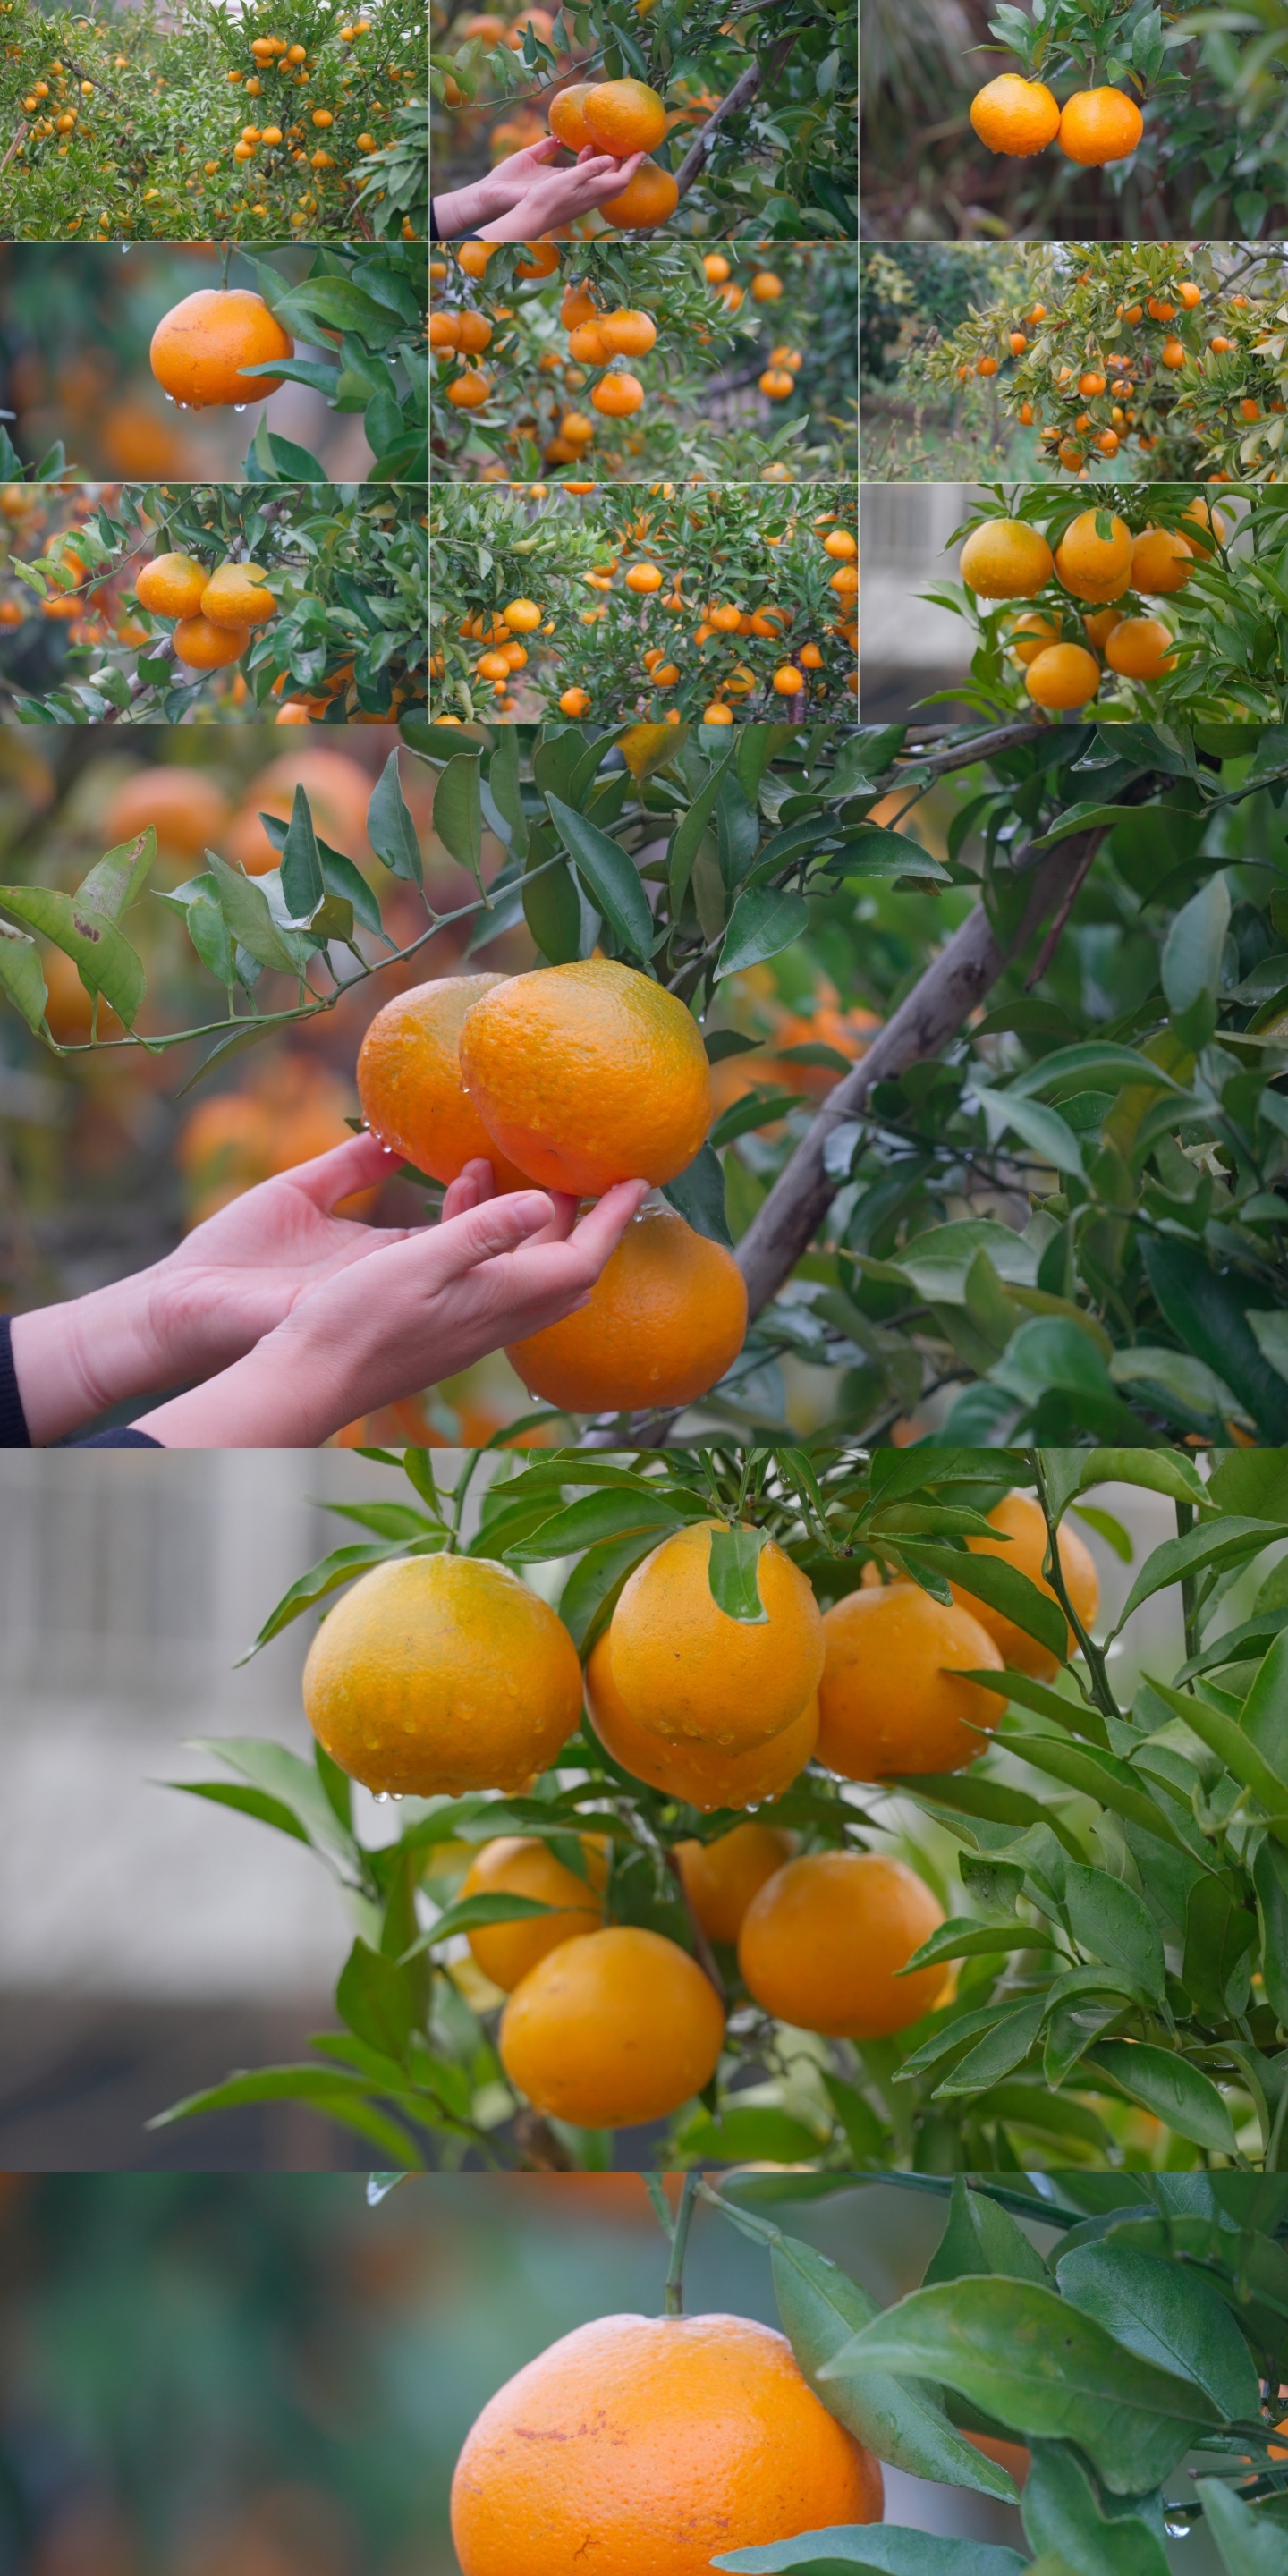 橘子树橘子成熟桔子树橙子